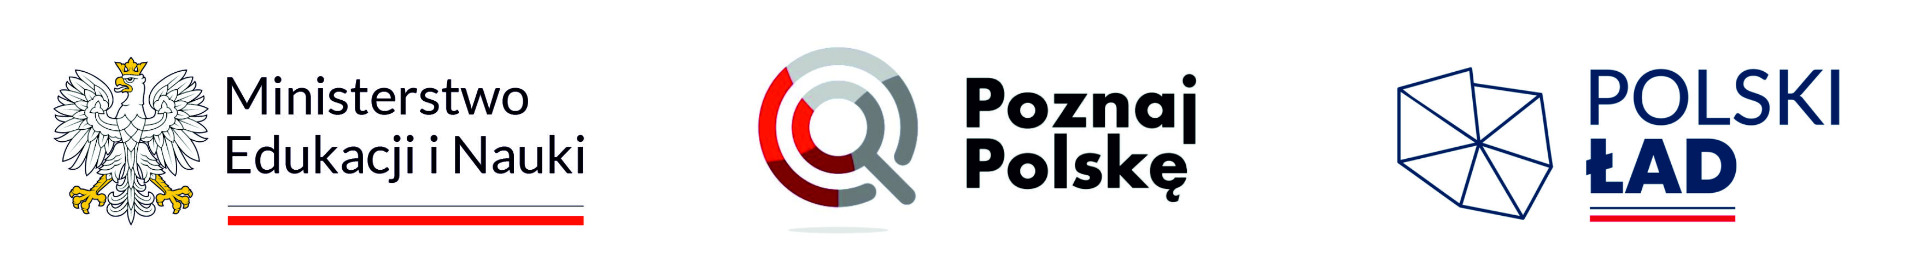 Mamy TO!!!! Nasza szkoła z dofinansowaniem Ministra Edukacji i Nauki z przedsięwzięcia „Poznaj Polskę”!!!  - Obrazek 1